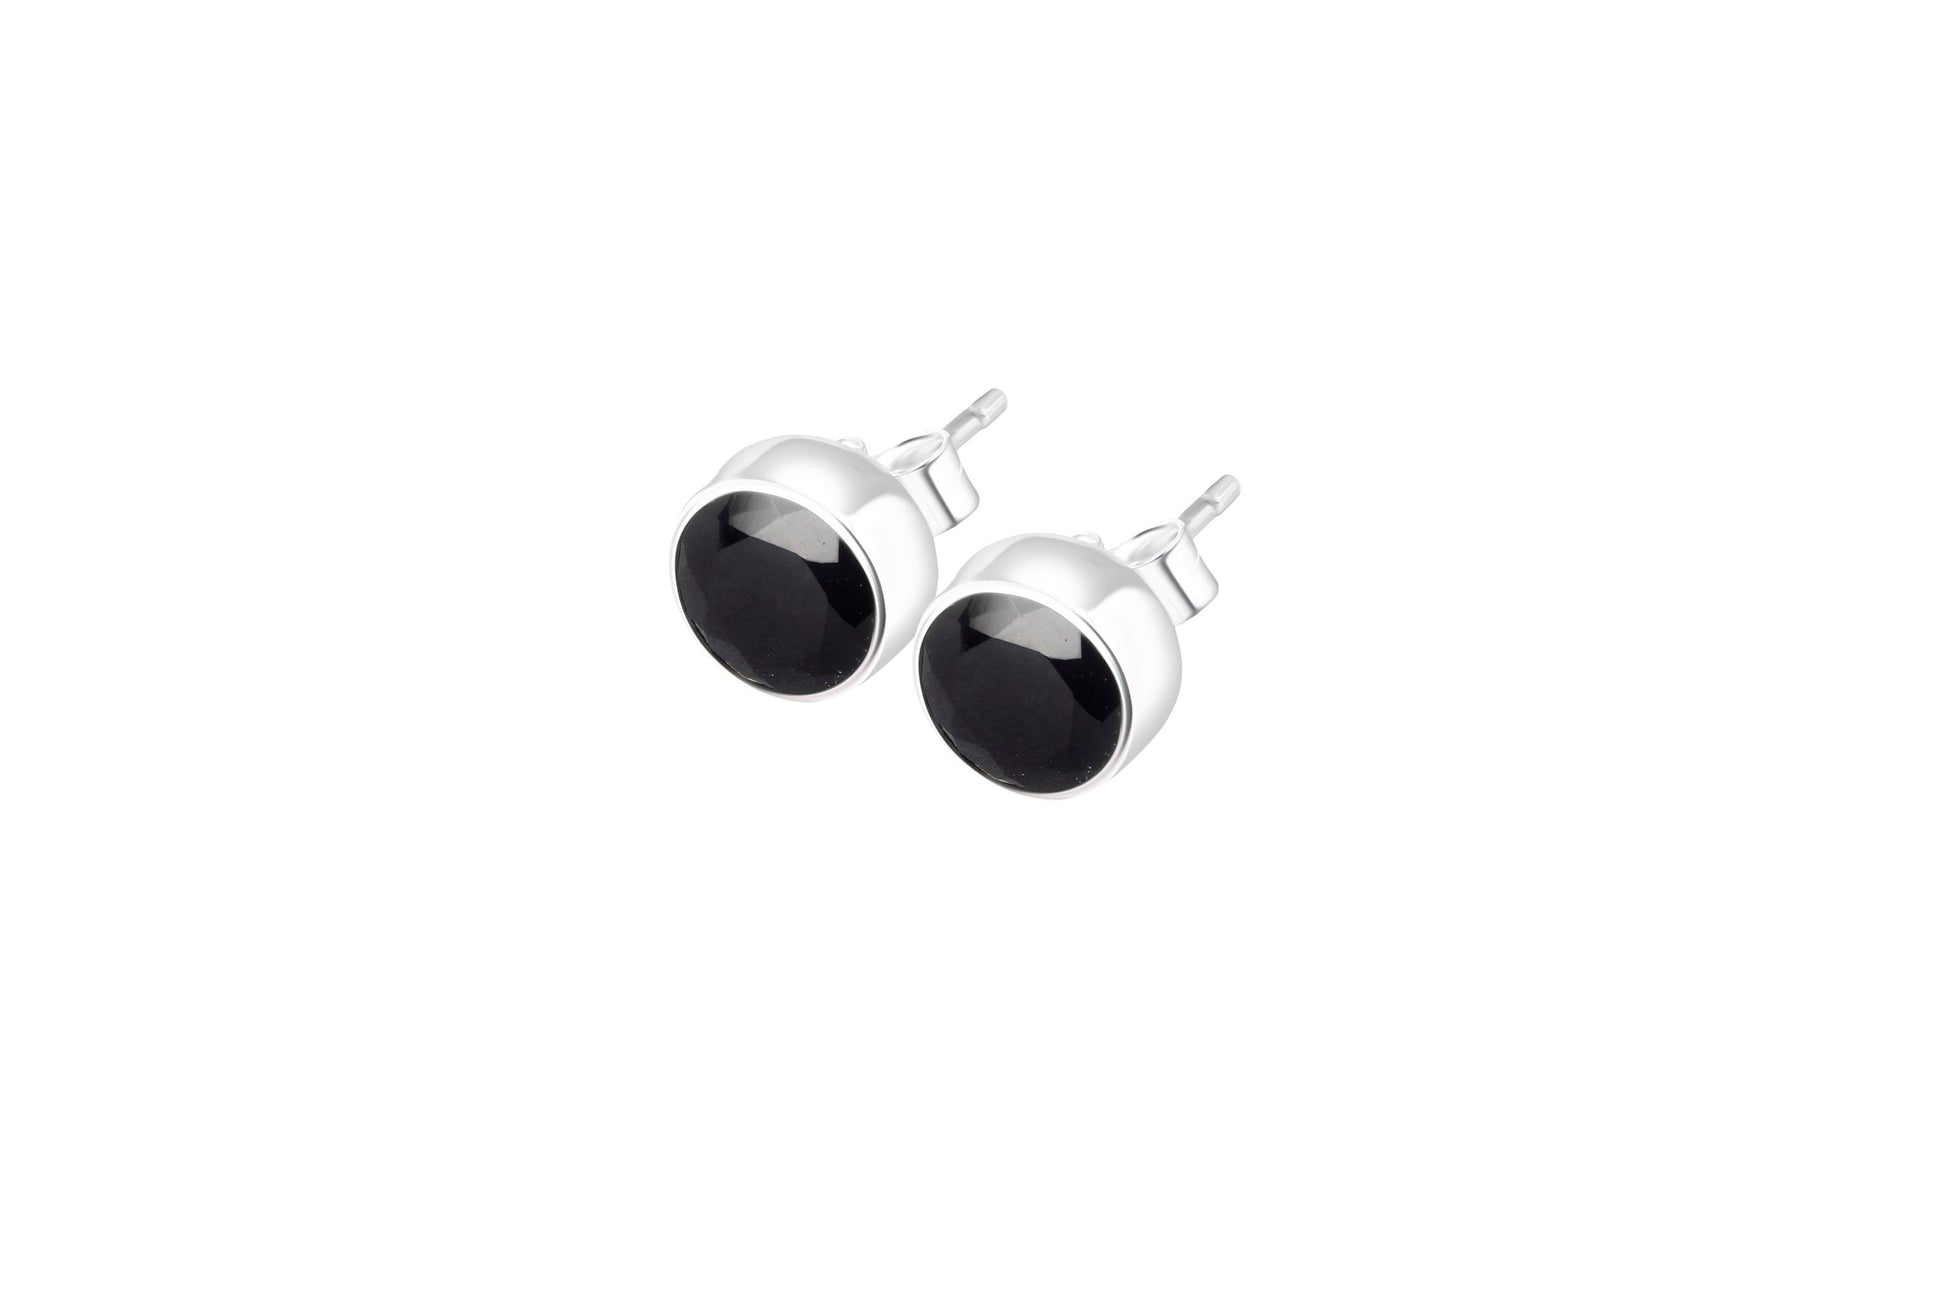 Beautifully Cut Black Onyx Gemstones Solid 925 Sterling Silver Stud Earrings, black onyx studs, classy black stud earrings, Australia, Zorbajewellers